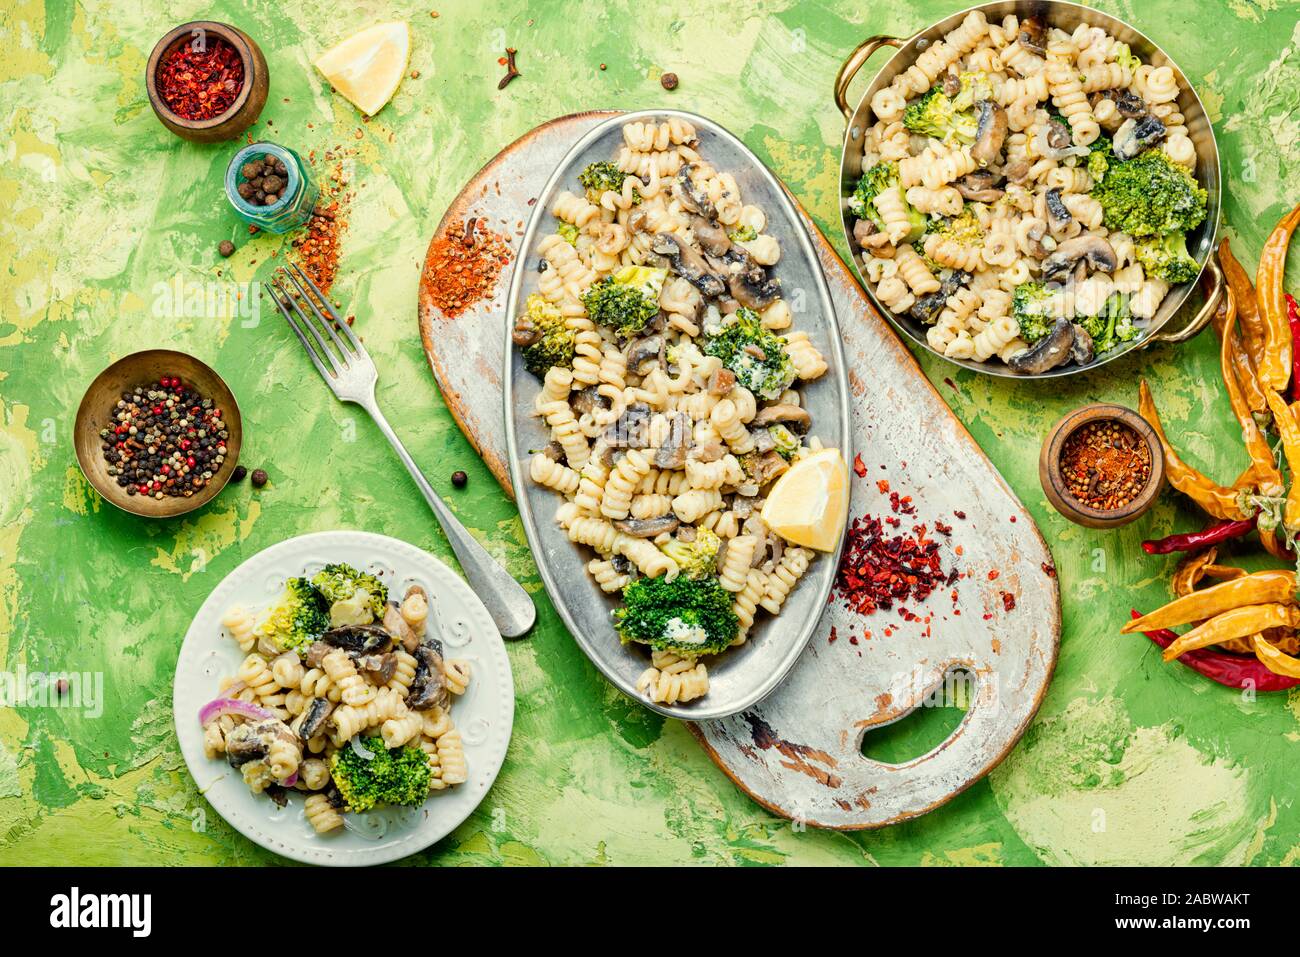 Le brocoli cuit et les pâtes aux champignons.La cuisine Italienne Banque D'Images